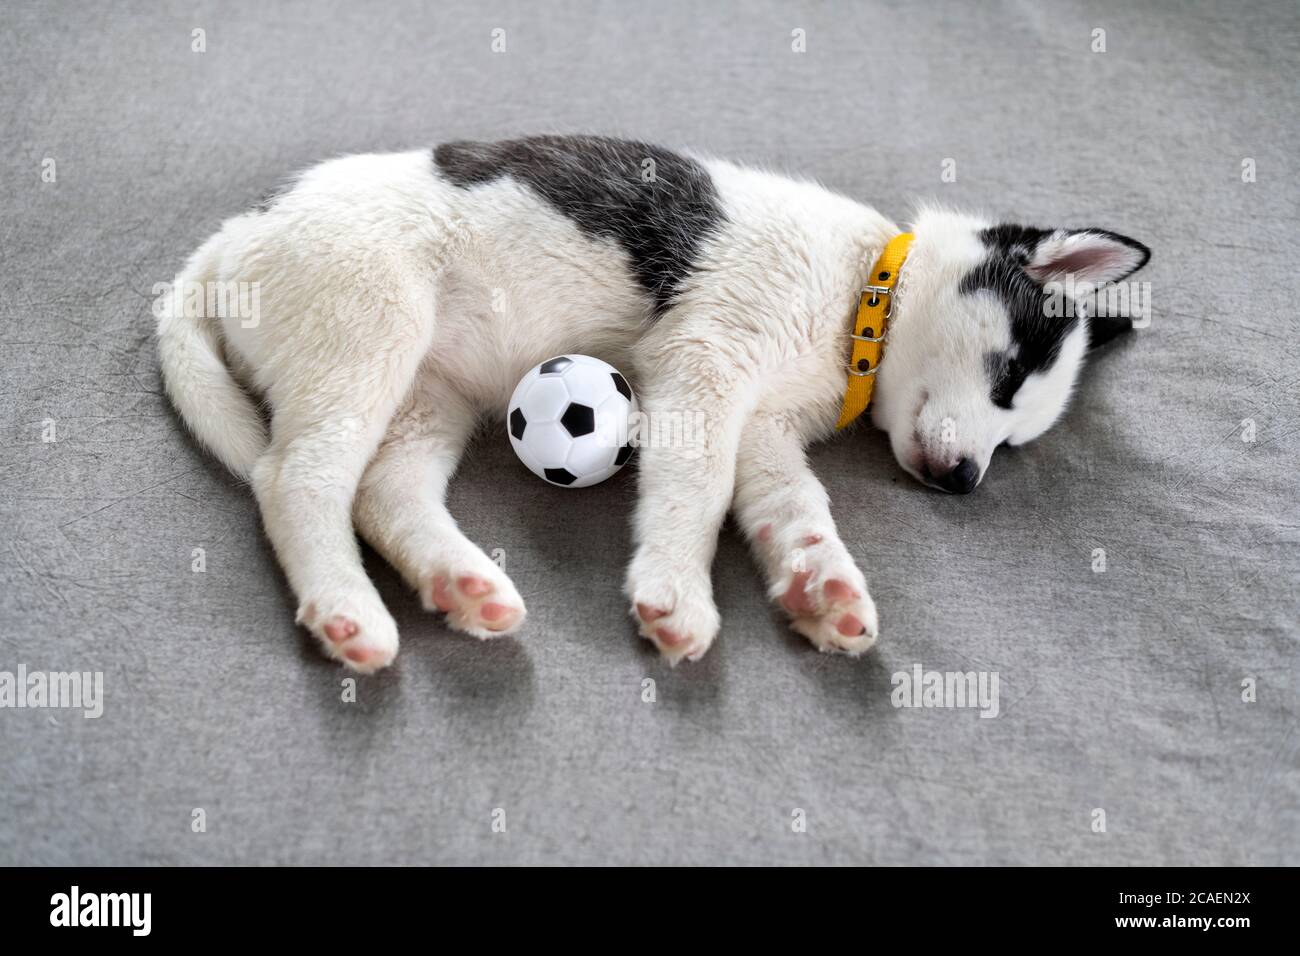 Ein kleiner weißer Hund Welpe Rasse sibirischen Husky mit schönen blauen Augen legt sich auf grauen Teppich mit Ball Spielzeug. Hunde und Haustiere Fotografie Stockfoto